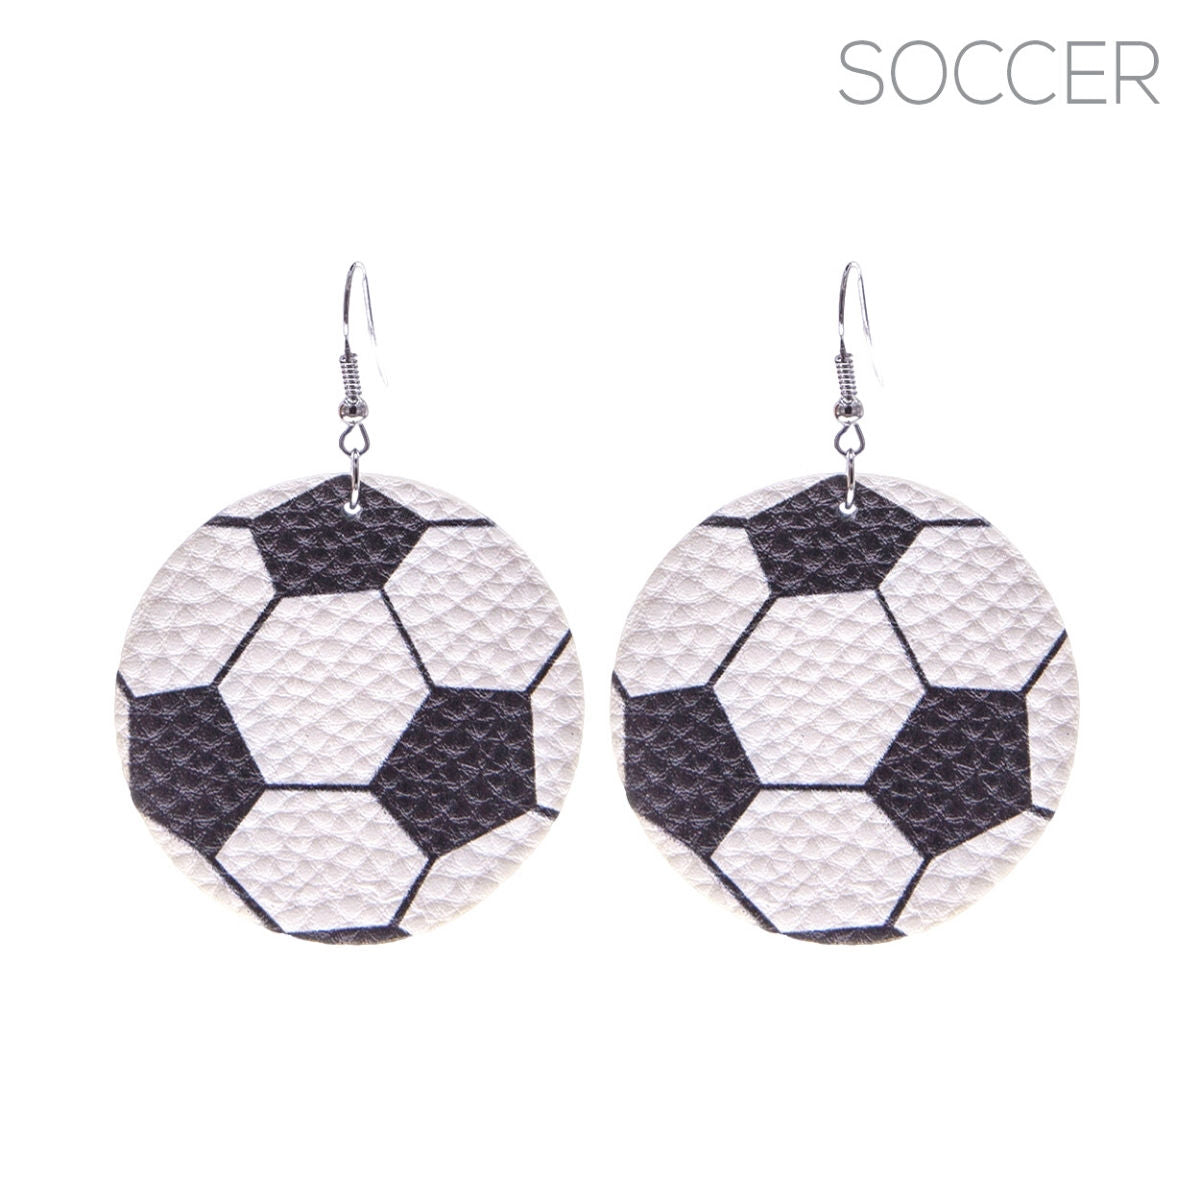 Soccer Vegan Leather Earrings